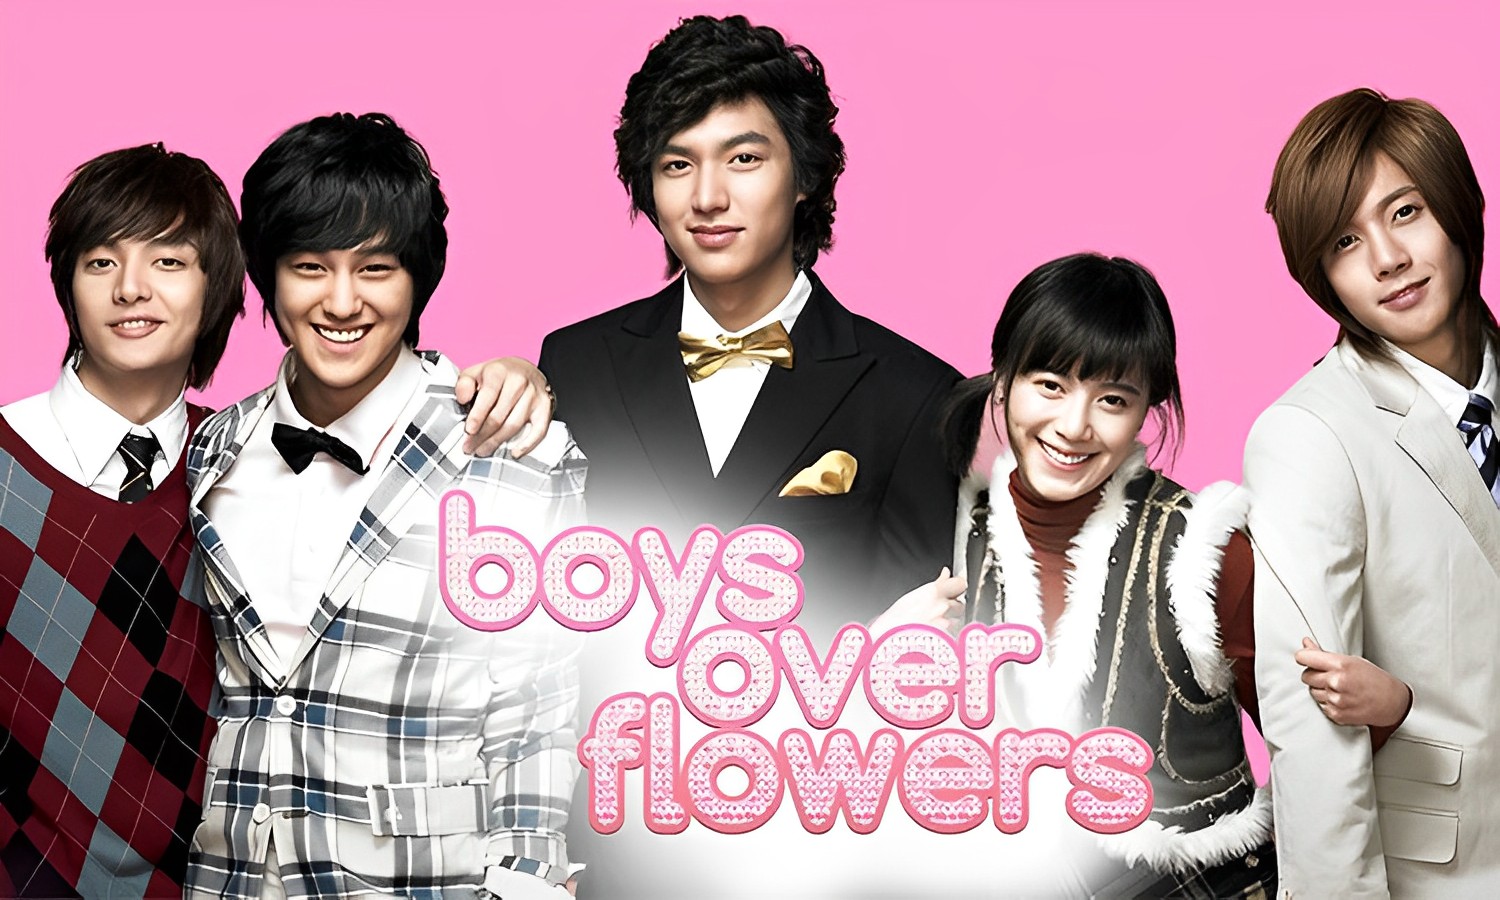 Boys Over Flowers Season 2 Coming Soon with Lee Min Ho, Goo Hye Sun and Kim Go Eun